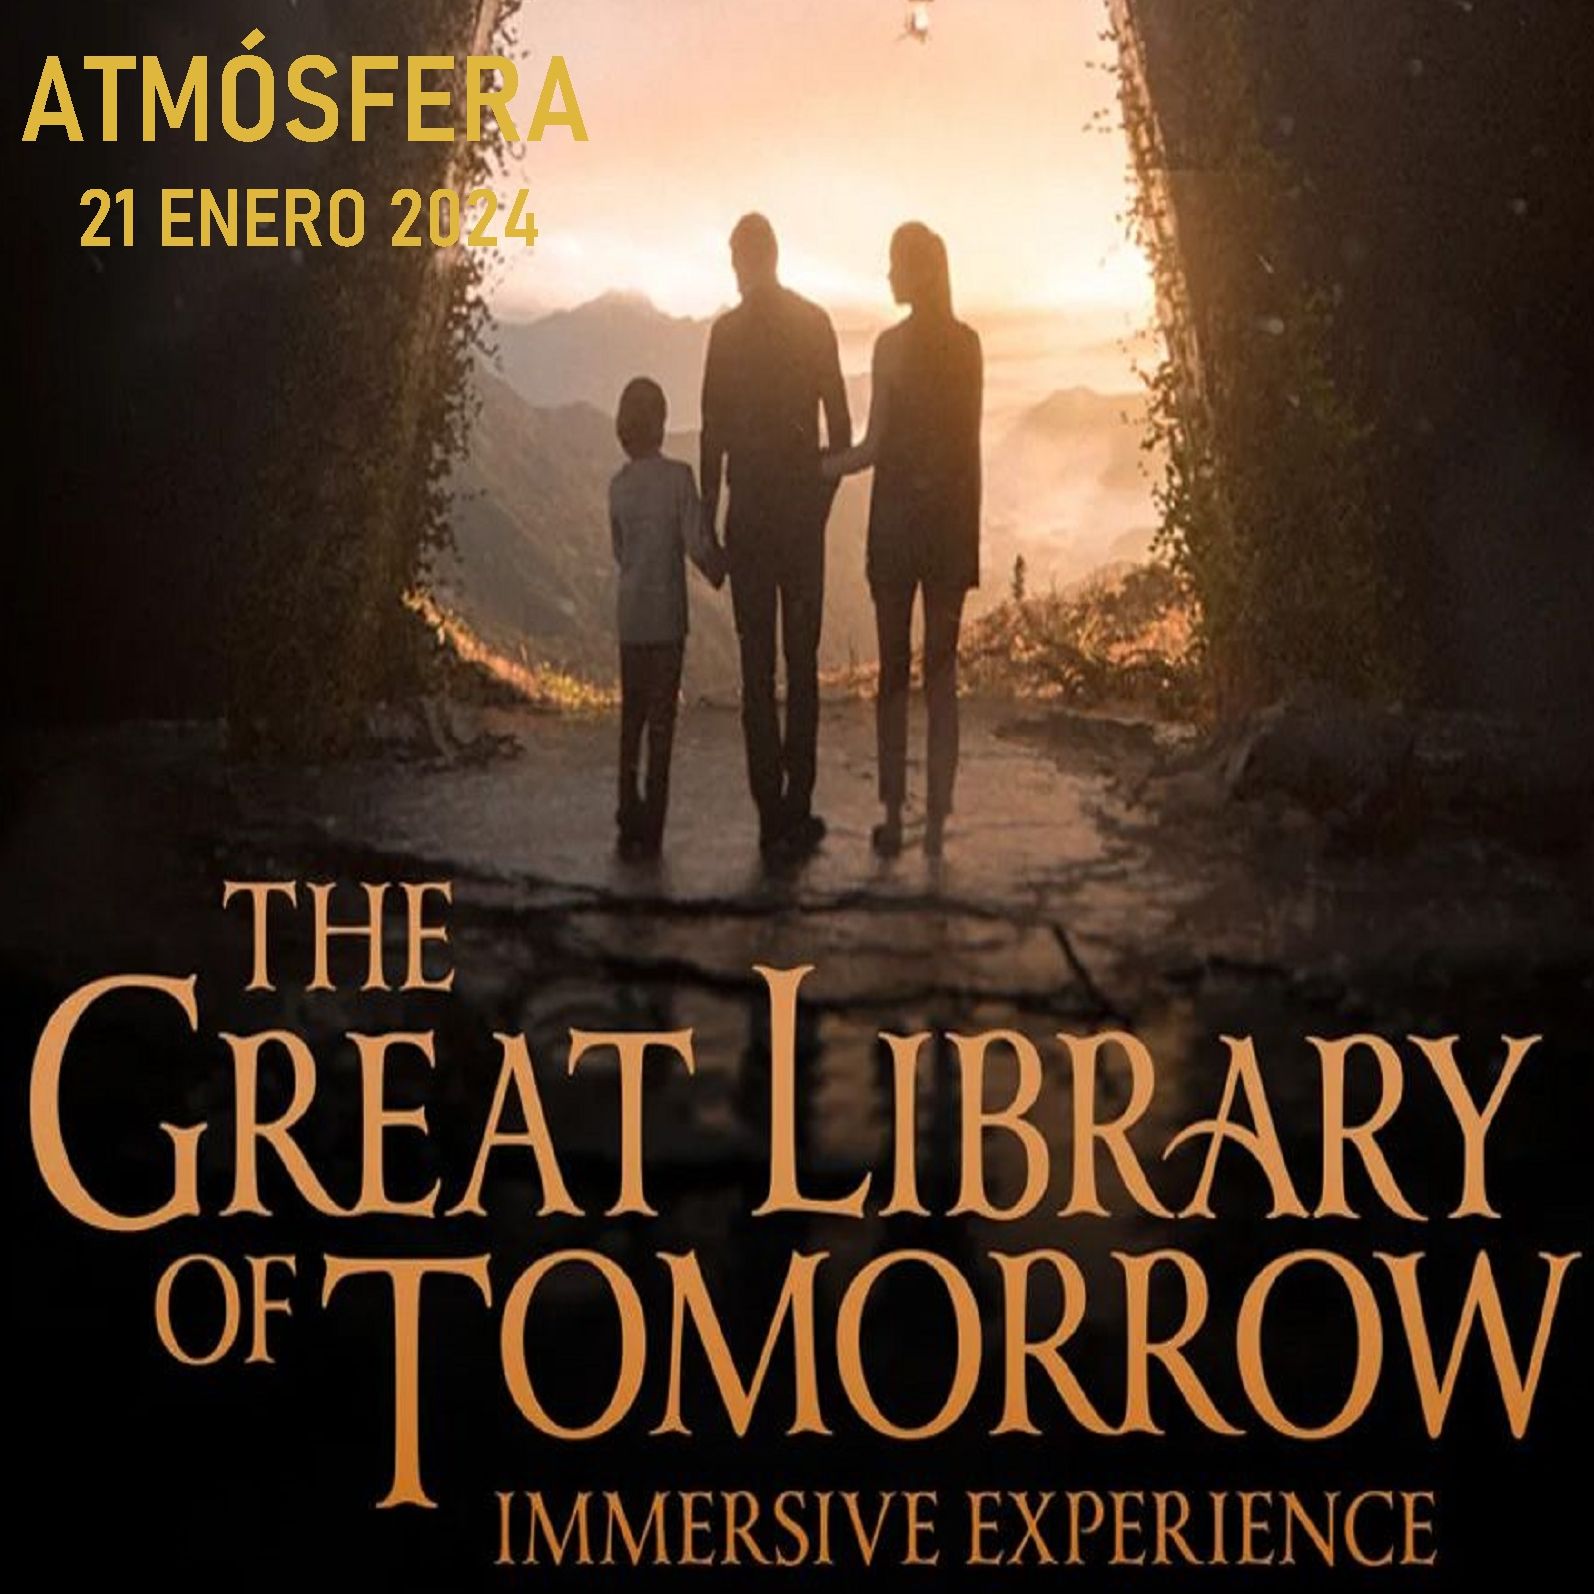 Atmósfera - Ana Quiroga, exposición "The Great Library of Tomorrow" - 21/01/24